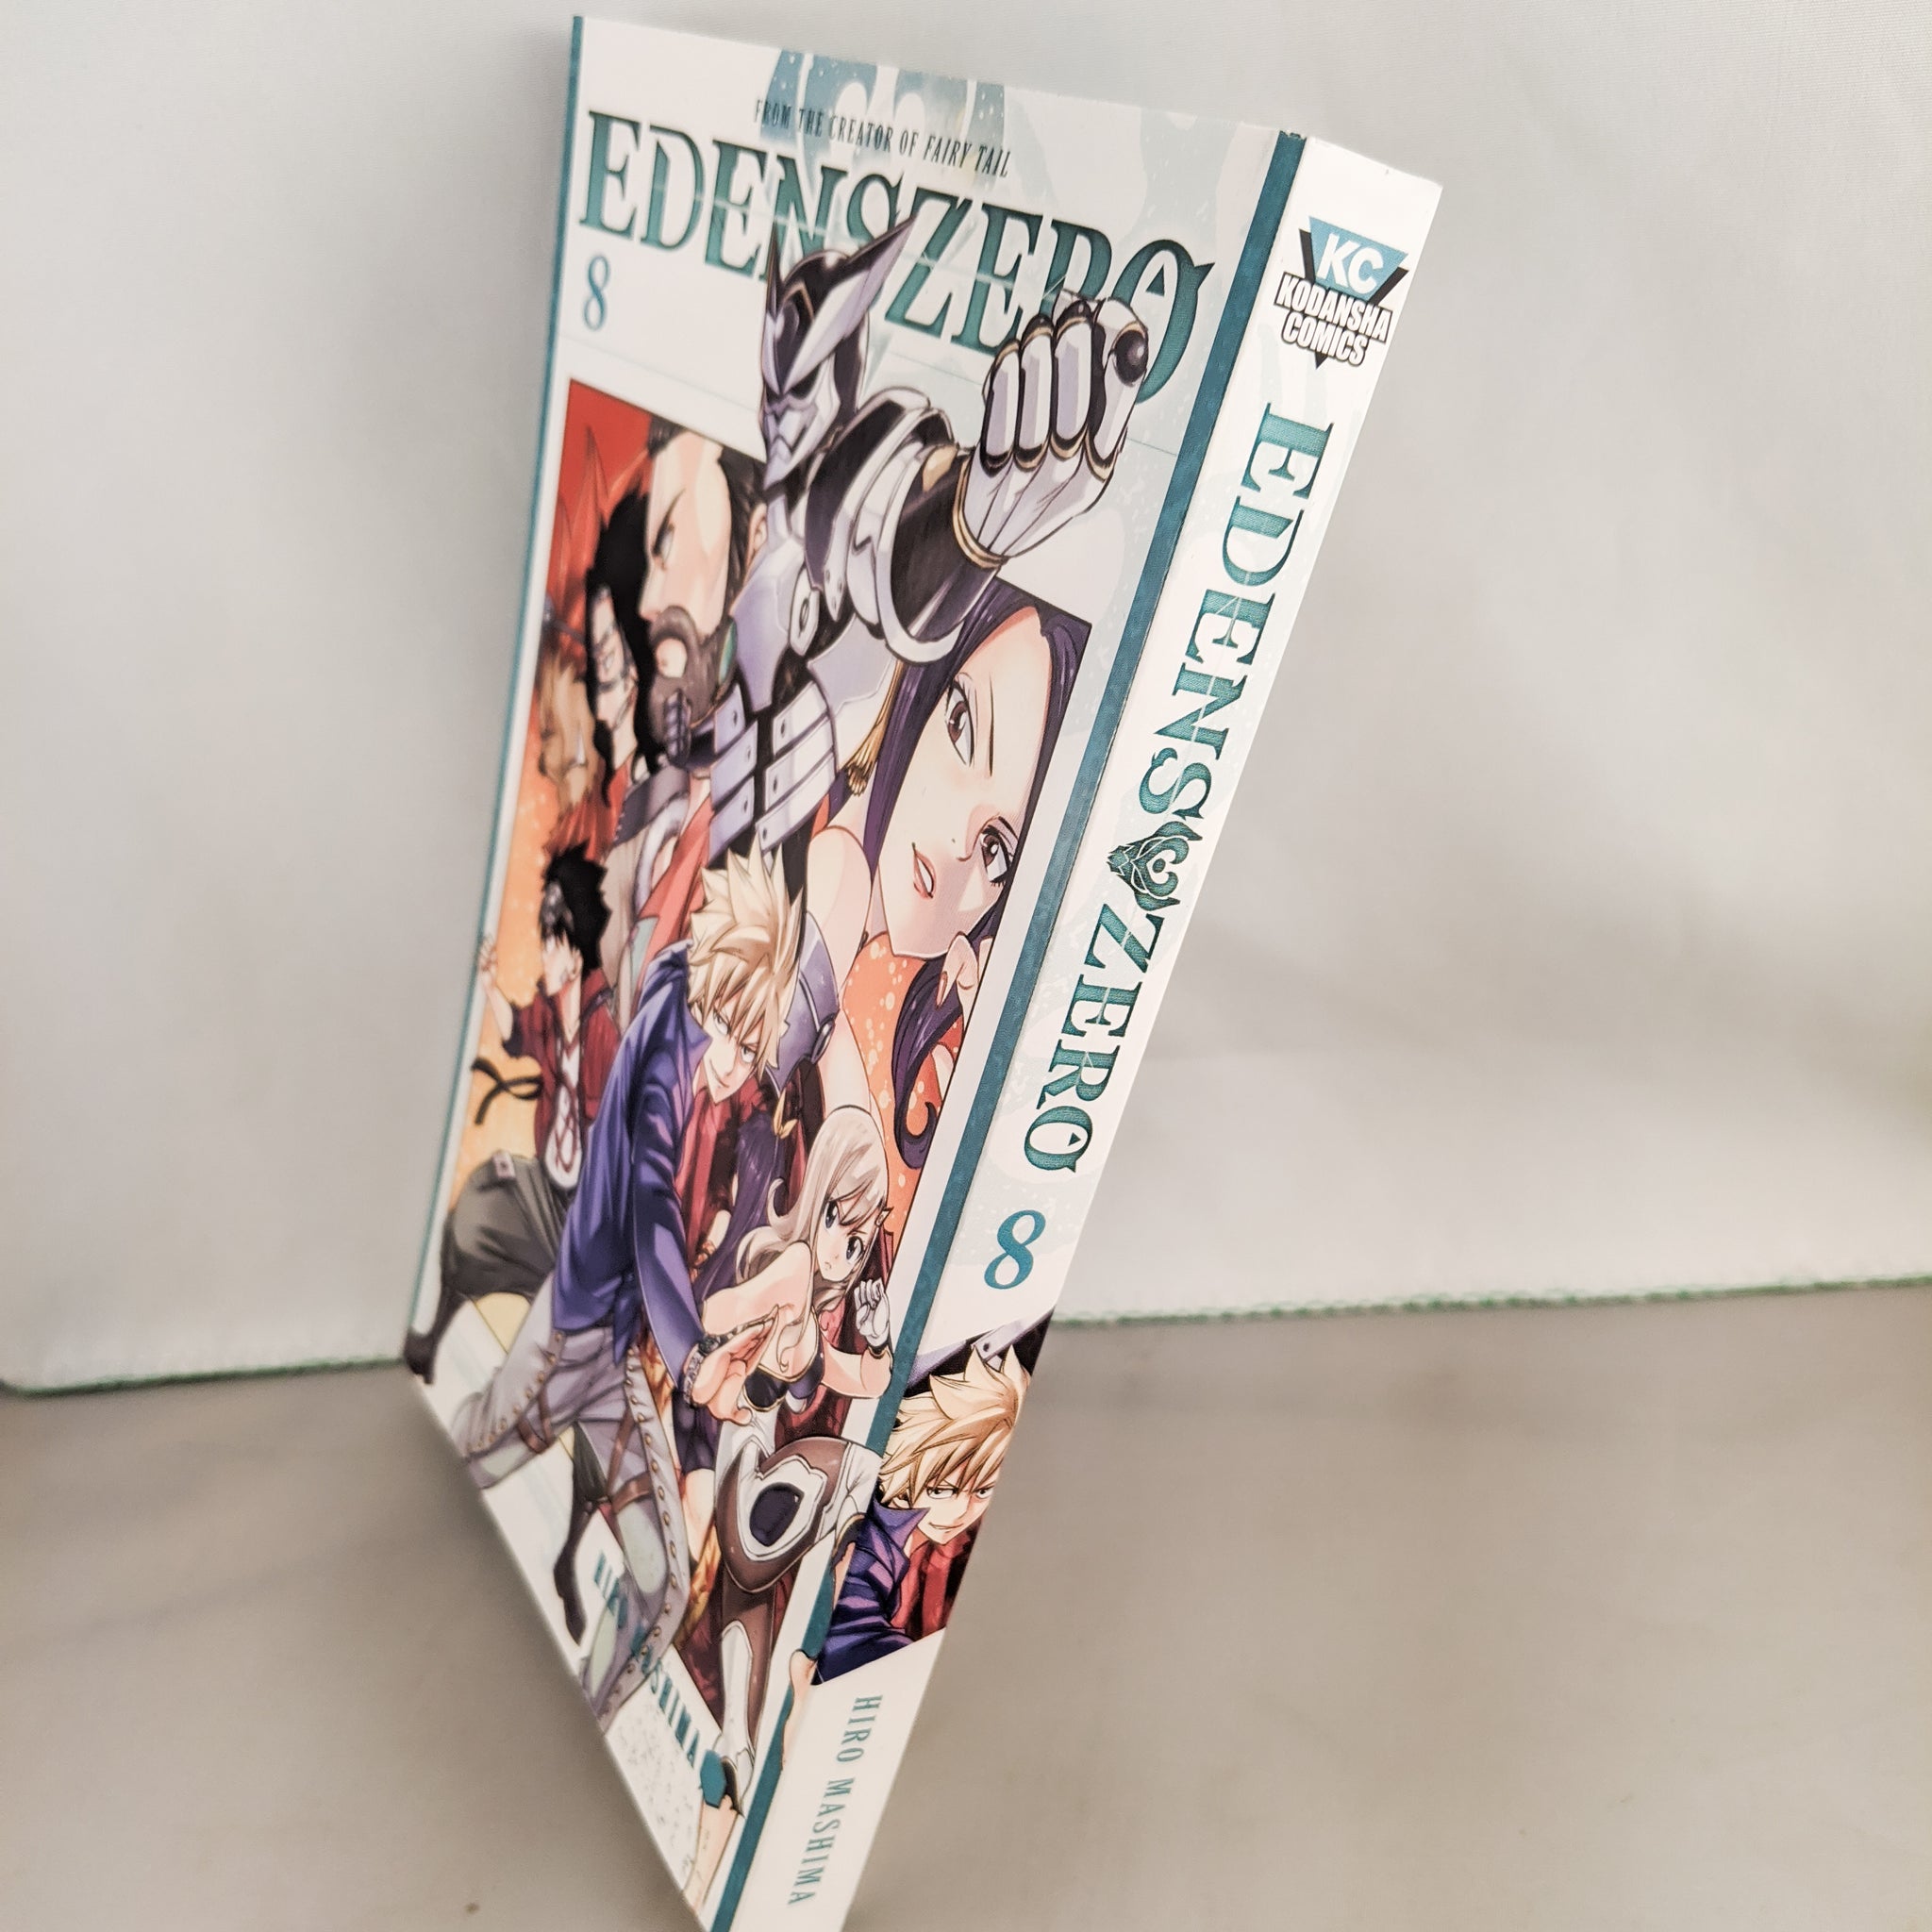 Edens Zero Vol. 8 (Manga) - Entertainment Hobby Shop Jungle